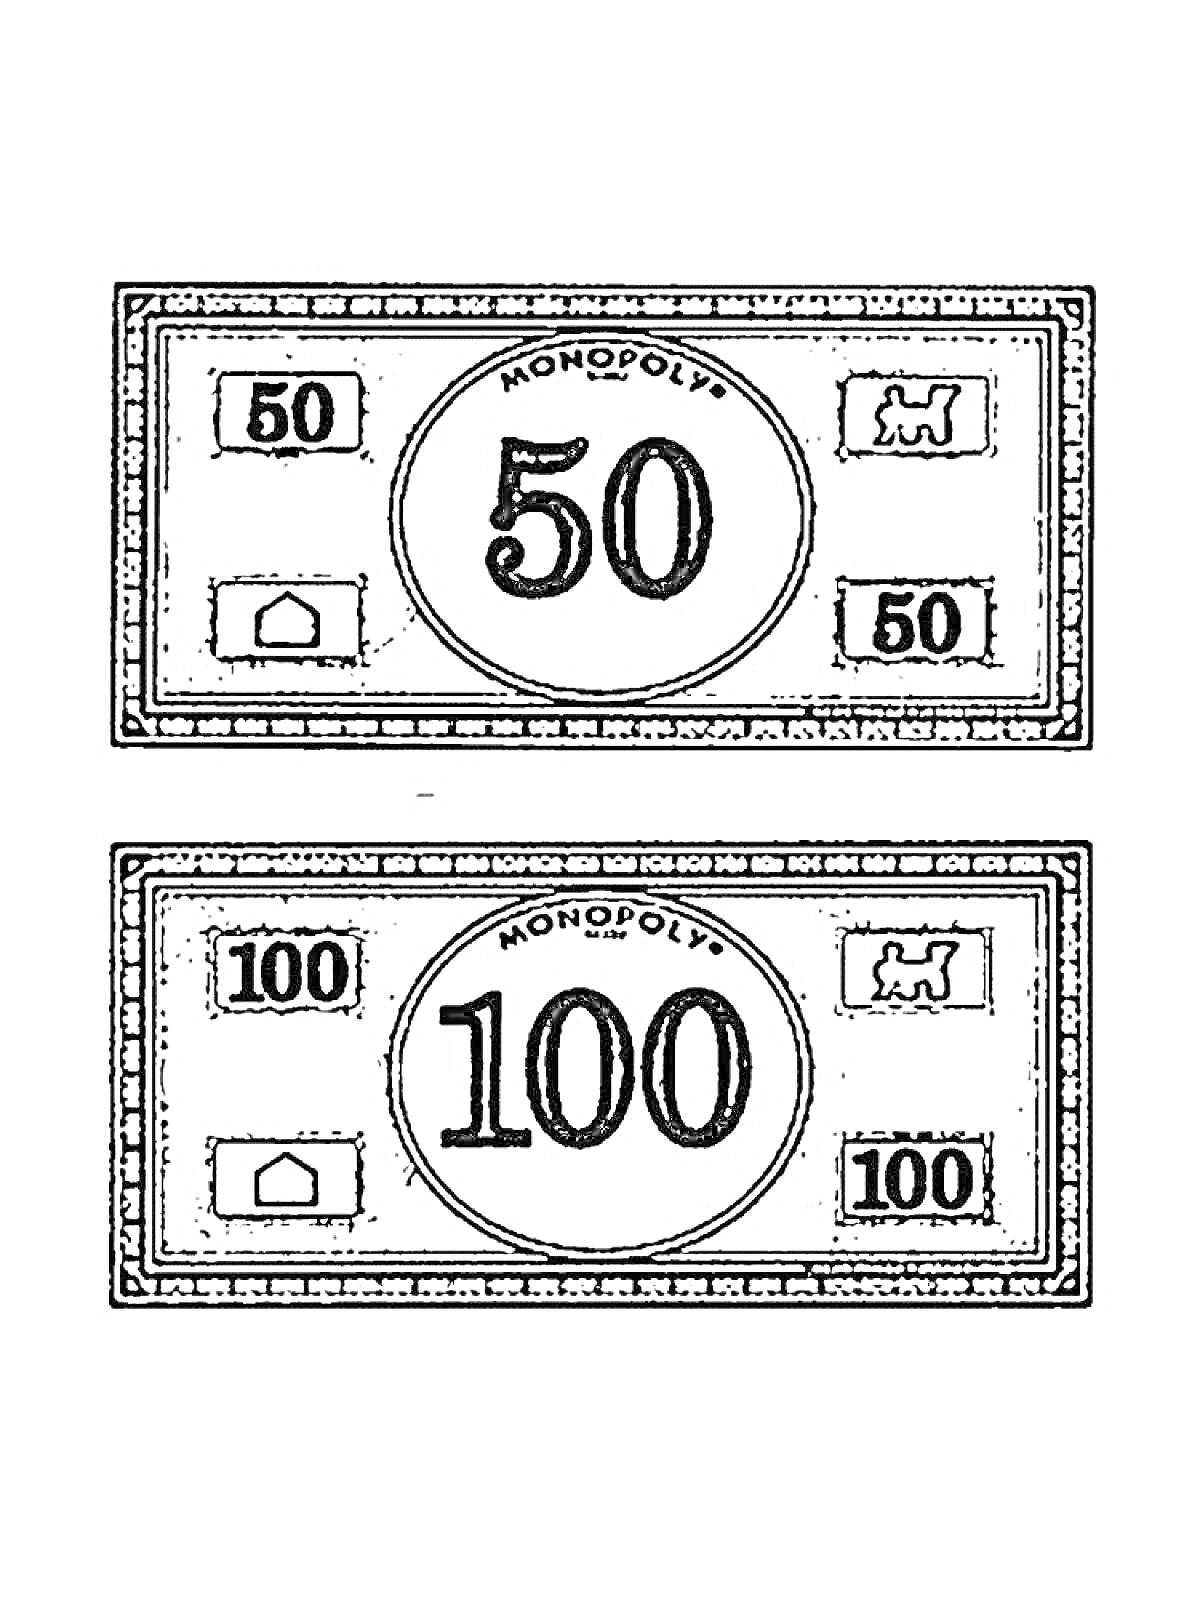 Раскраска Банкноты Монополии с номиналами 50 и 100, изображены символы домика и машинки